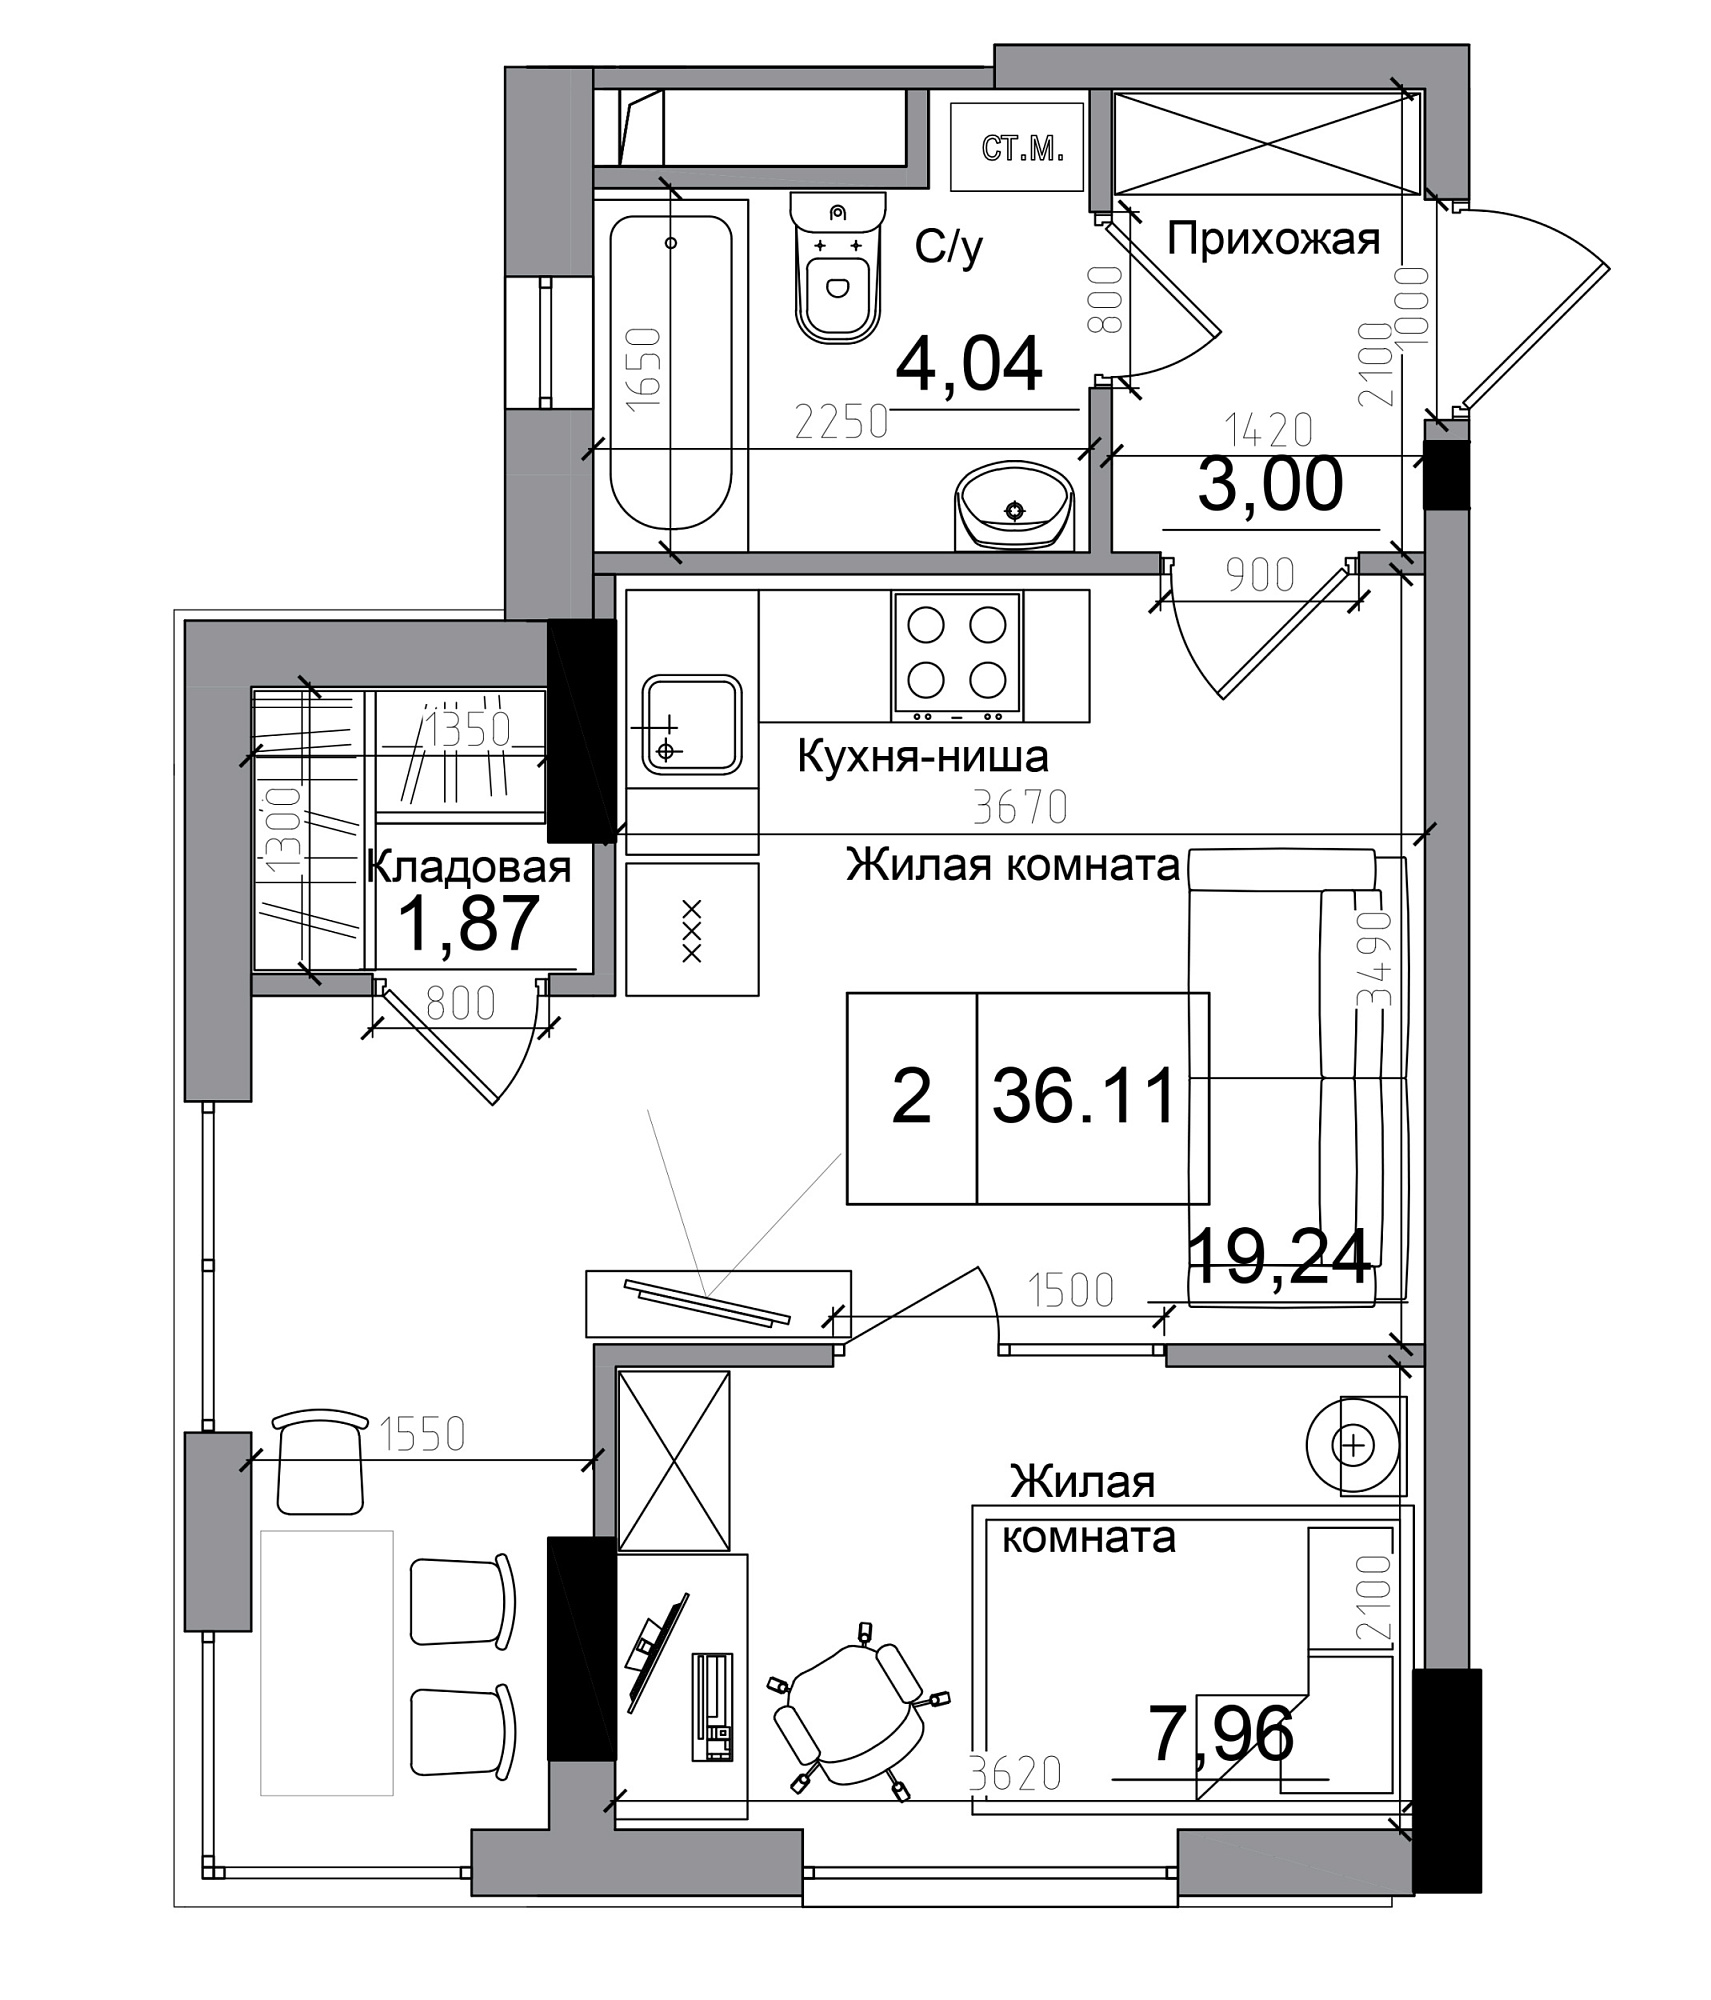 Планування 1-к квартира площею 36.11м2, AB-11-12/00004.